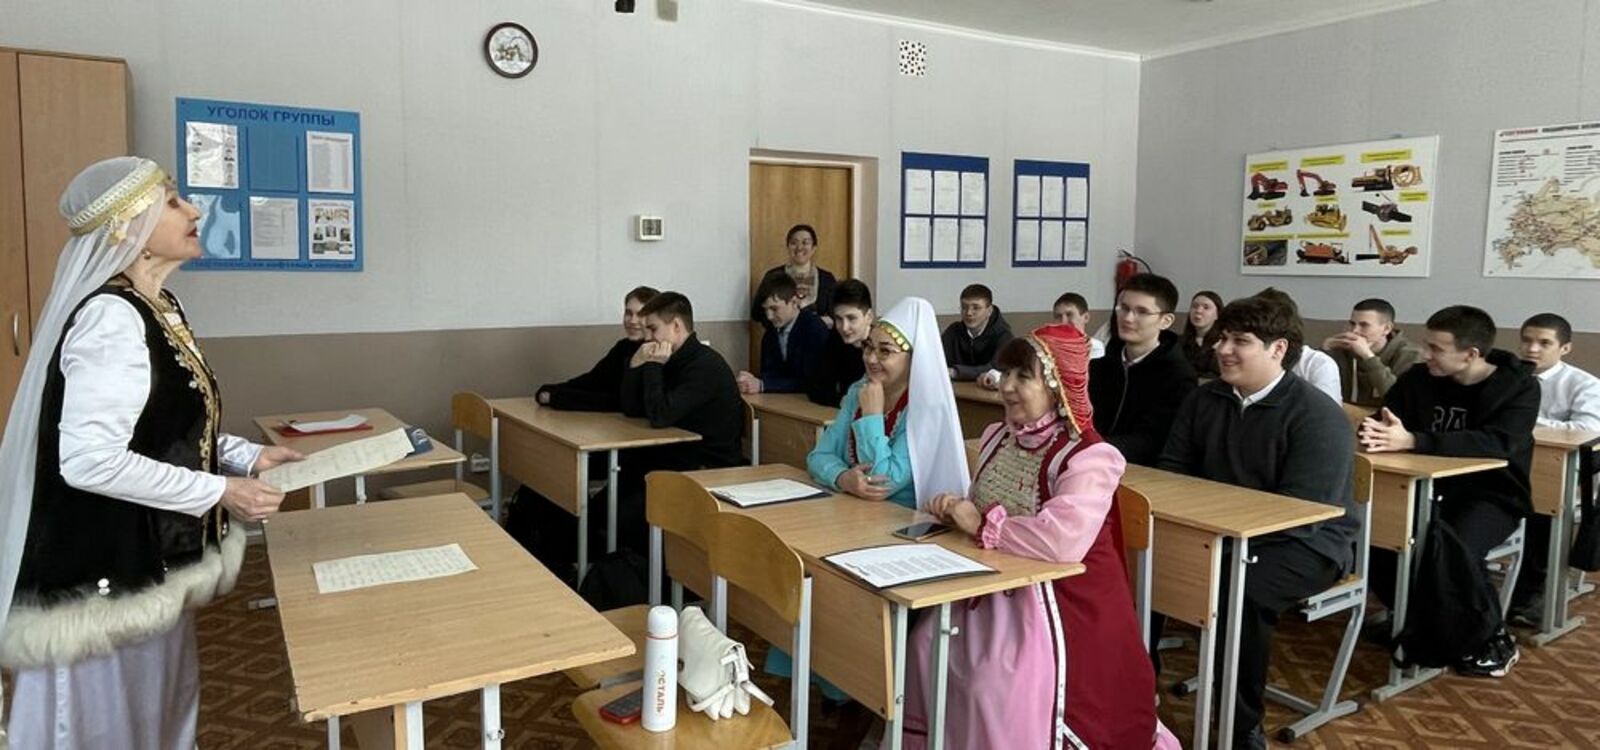 Встреча со студентами ННК прошла насыщенно и интересно. Фото: Зиля Амирова, «КЗ».